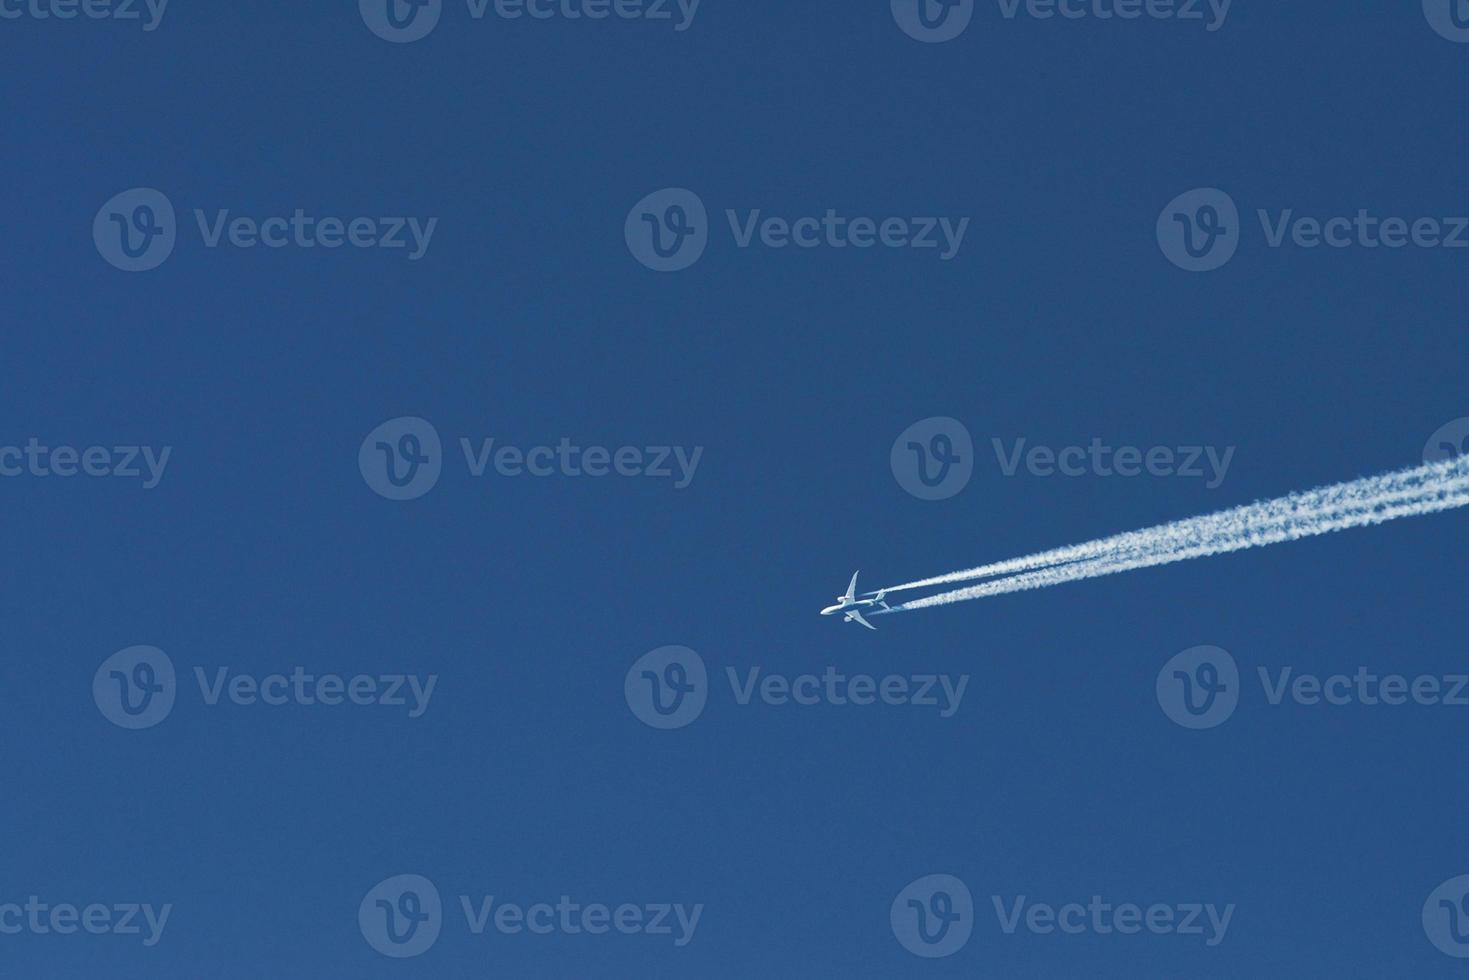 avion moderne volant haut dans le ciel bleu à la journée ensoleillée. vitesse et énergie photo